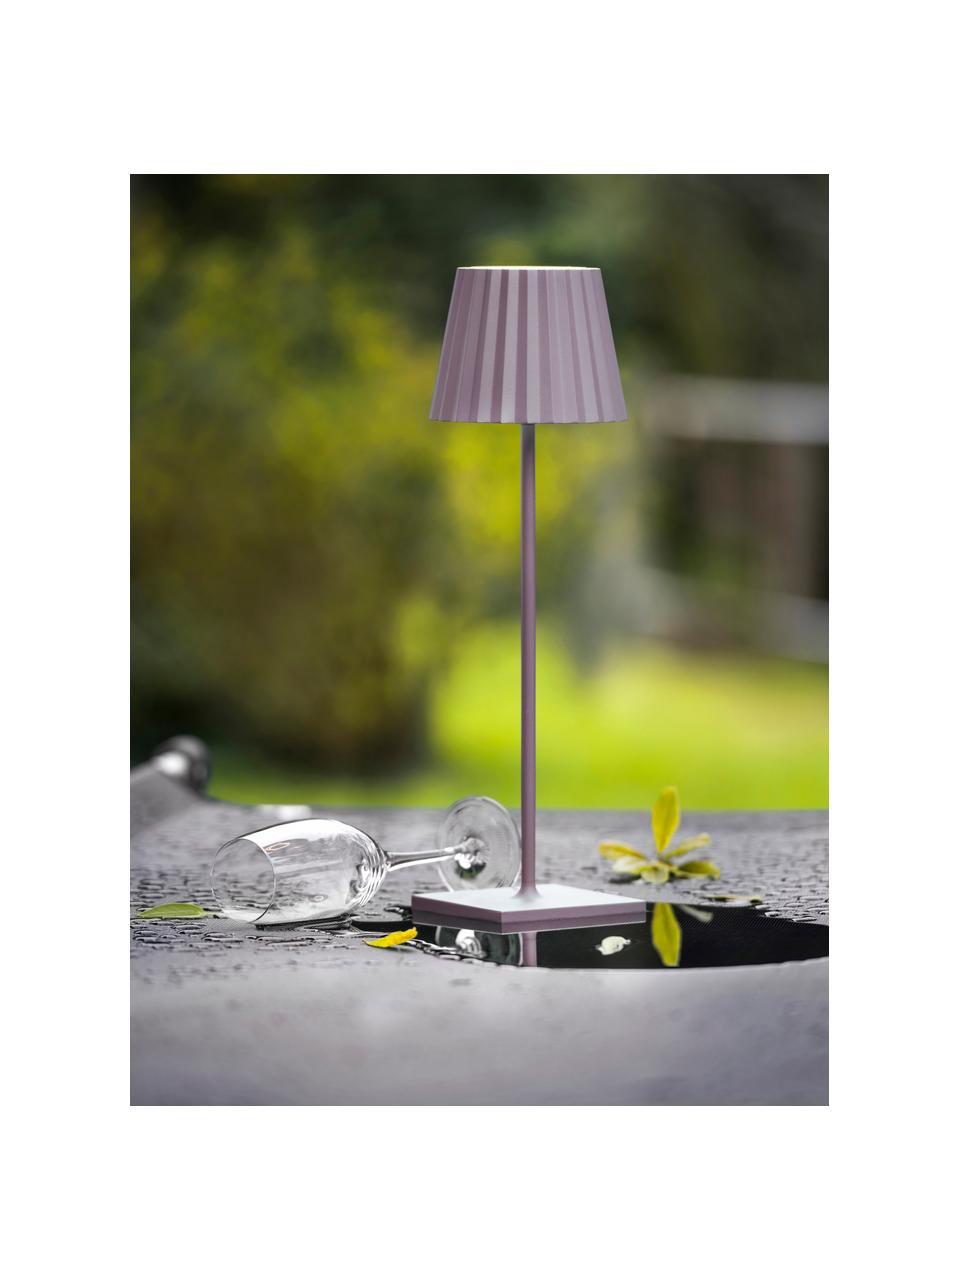 Lampada da tavolo da esterno portatile con luce regolabile Trellia, Alluminio laccato, Rosa, Ø 12 x Alt. 38 cm